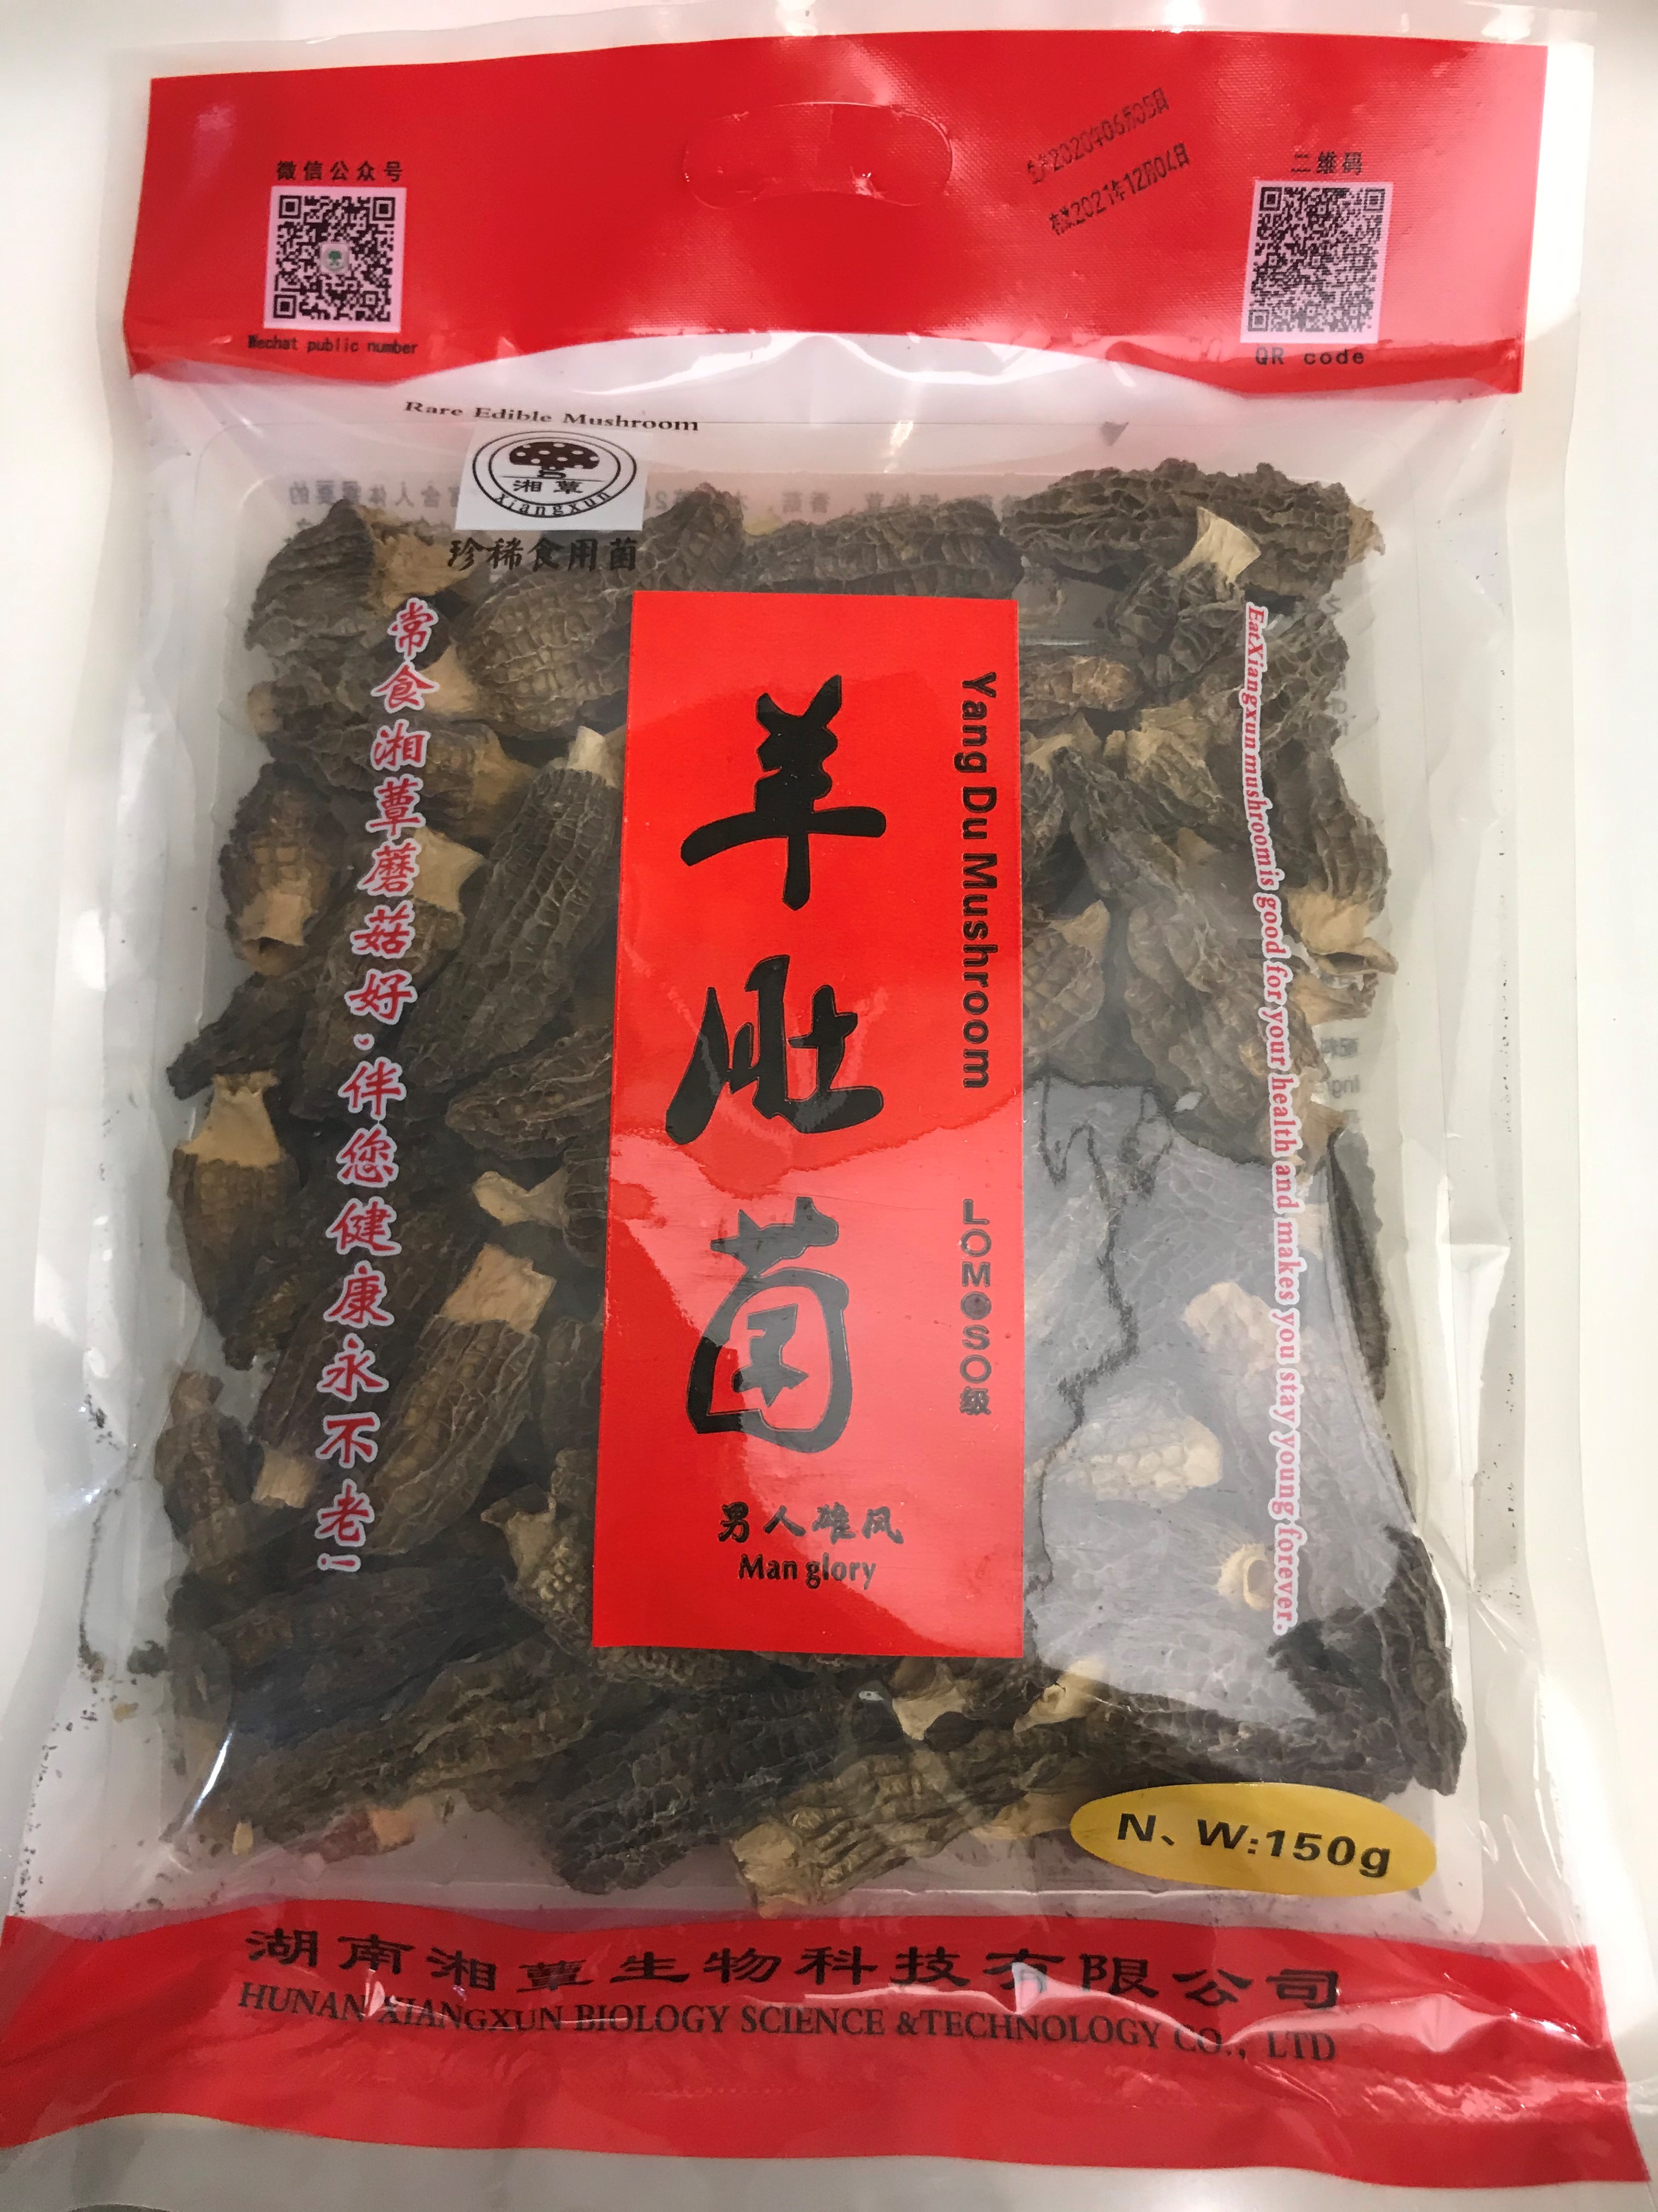 011 XiangXu Mushroom Rare Edible Mushroom Morel 